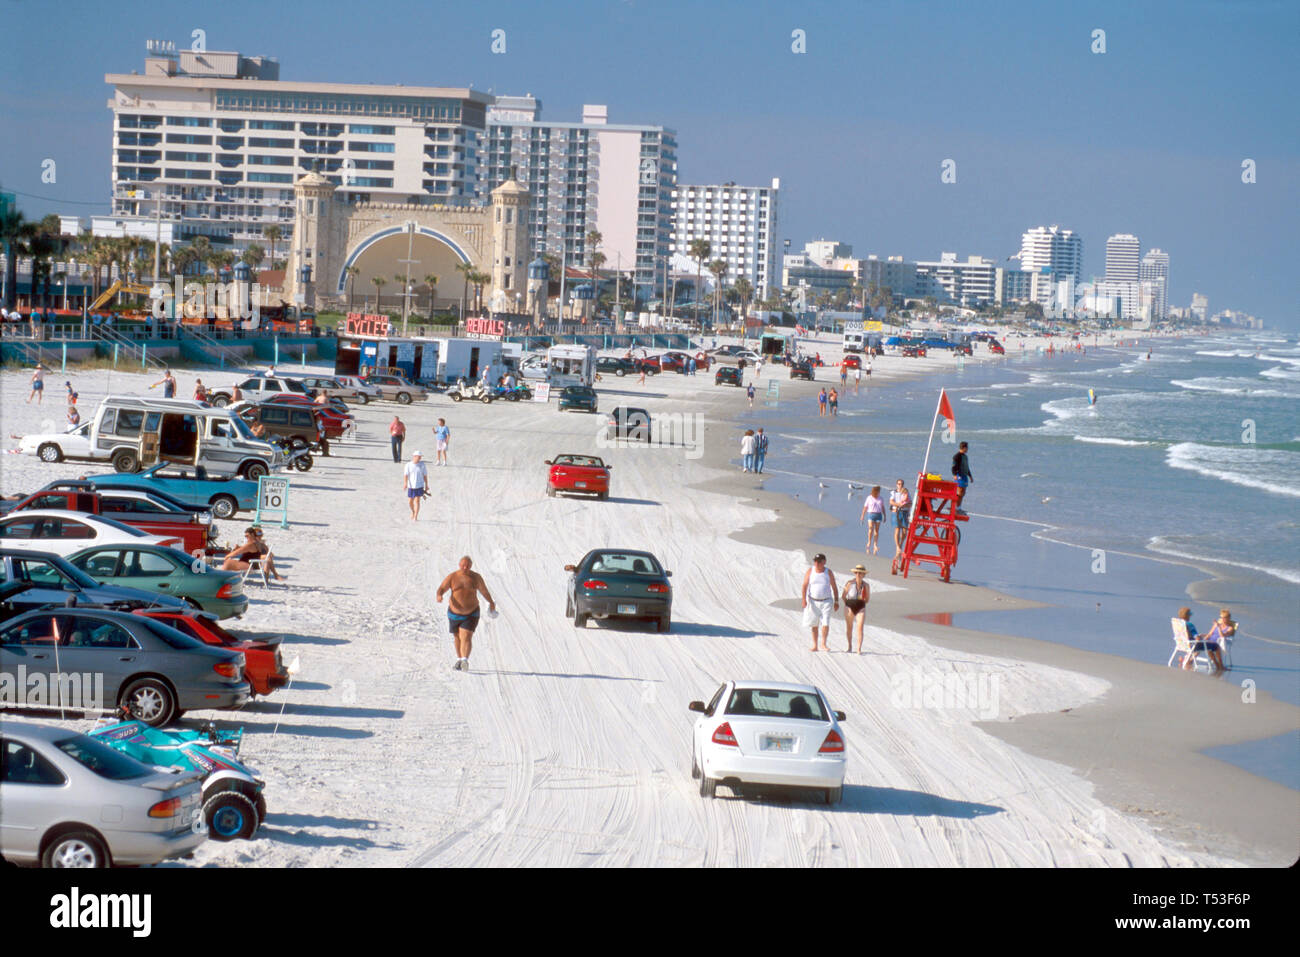 Florida Atlantic Shore Daytona Beach plages, sable, surf, véhicules sur la plage publique plages, sable, sable, surf, vue de main Street Pier, les visiteurs Voyage travail Banque D'Images